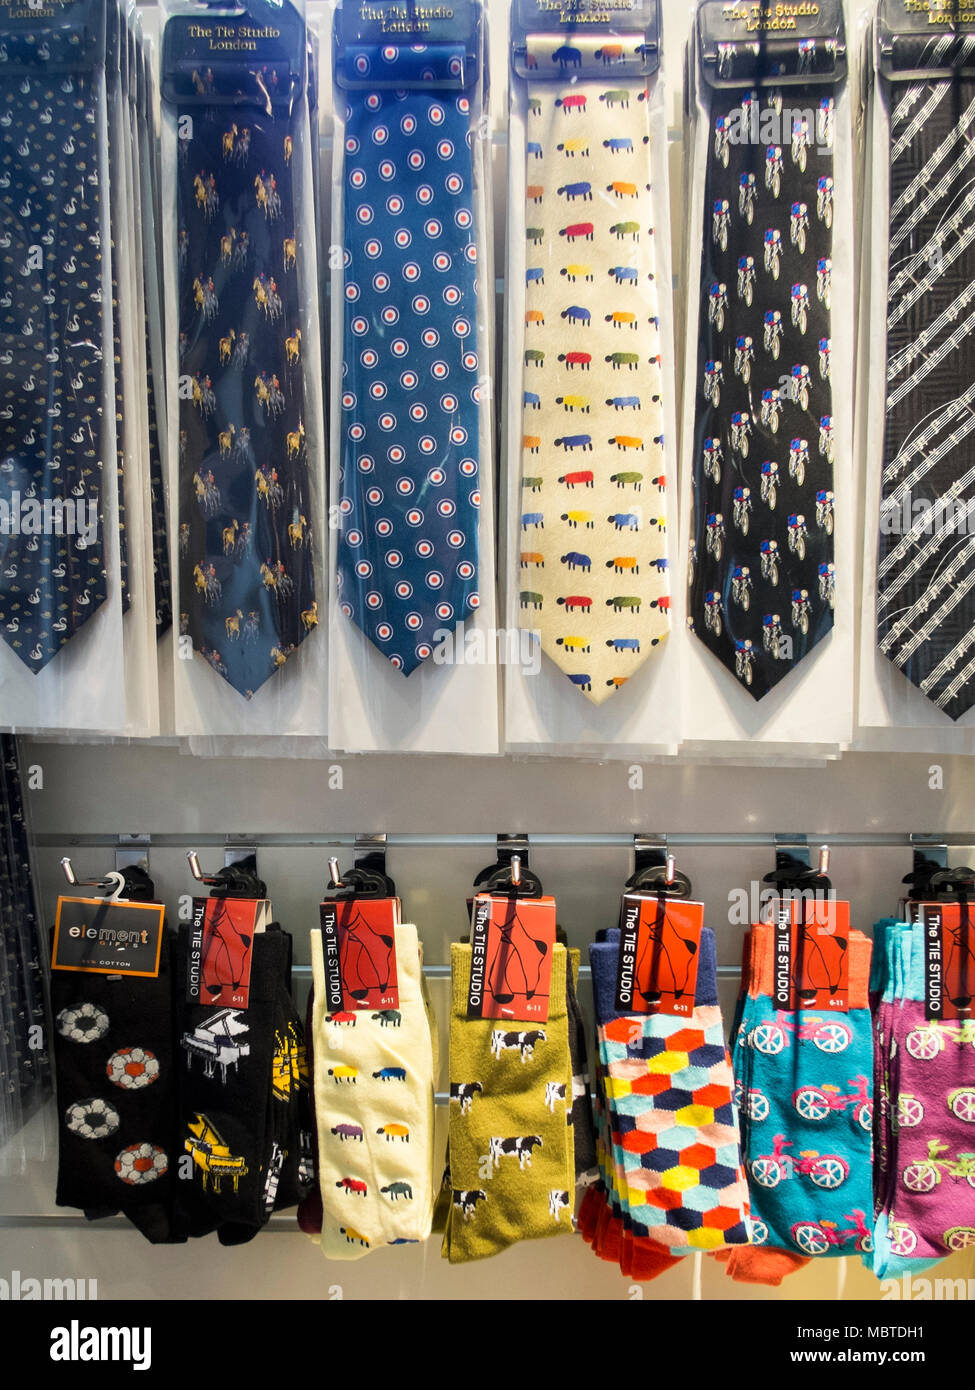 Cadeaux afficher de nouveauté men's cravates, mouchoirs et chaussettes Banque D'Images